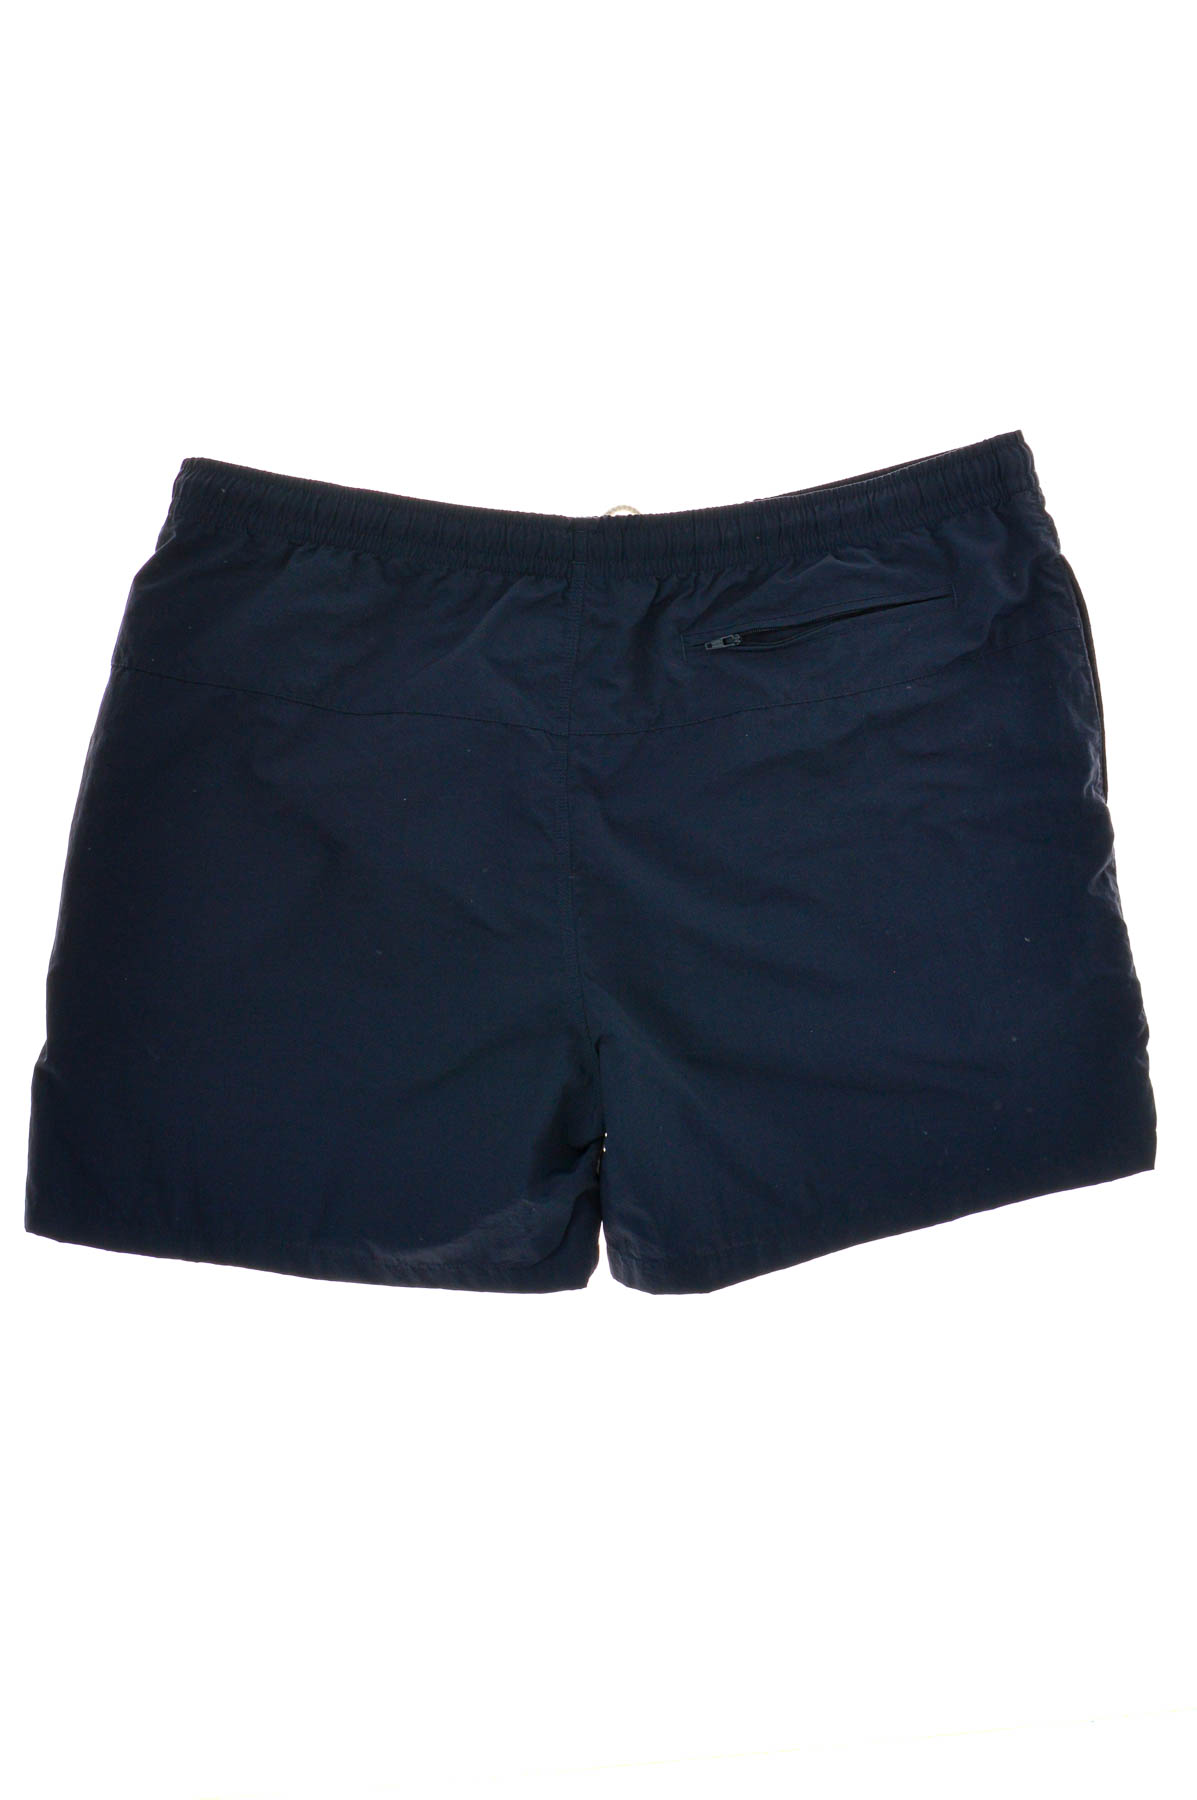 Men's shorts - URBAN CLASSICS - 1